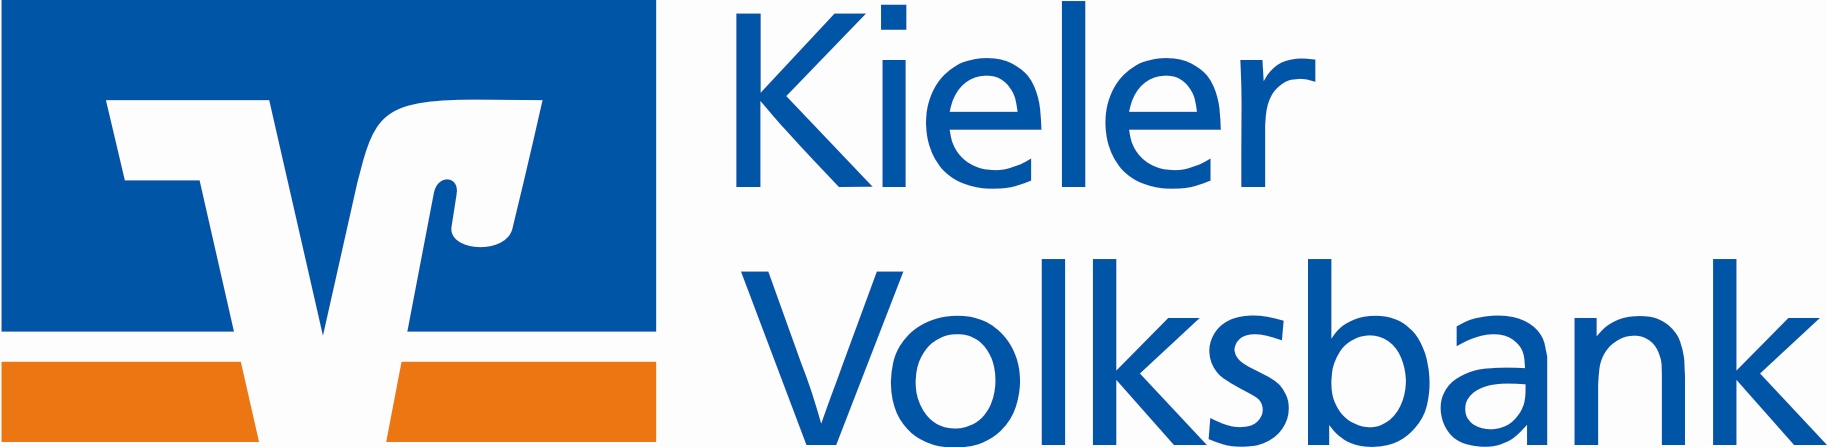 Kieler Volksbank